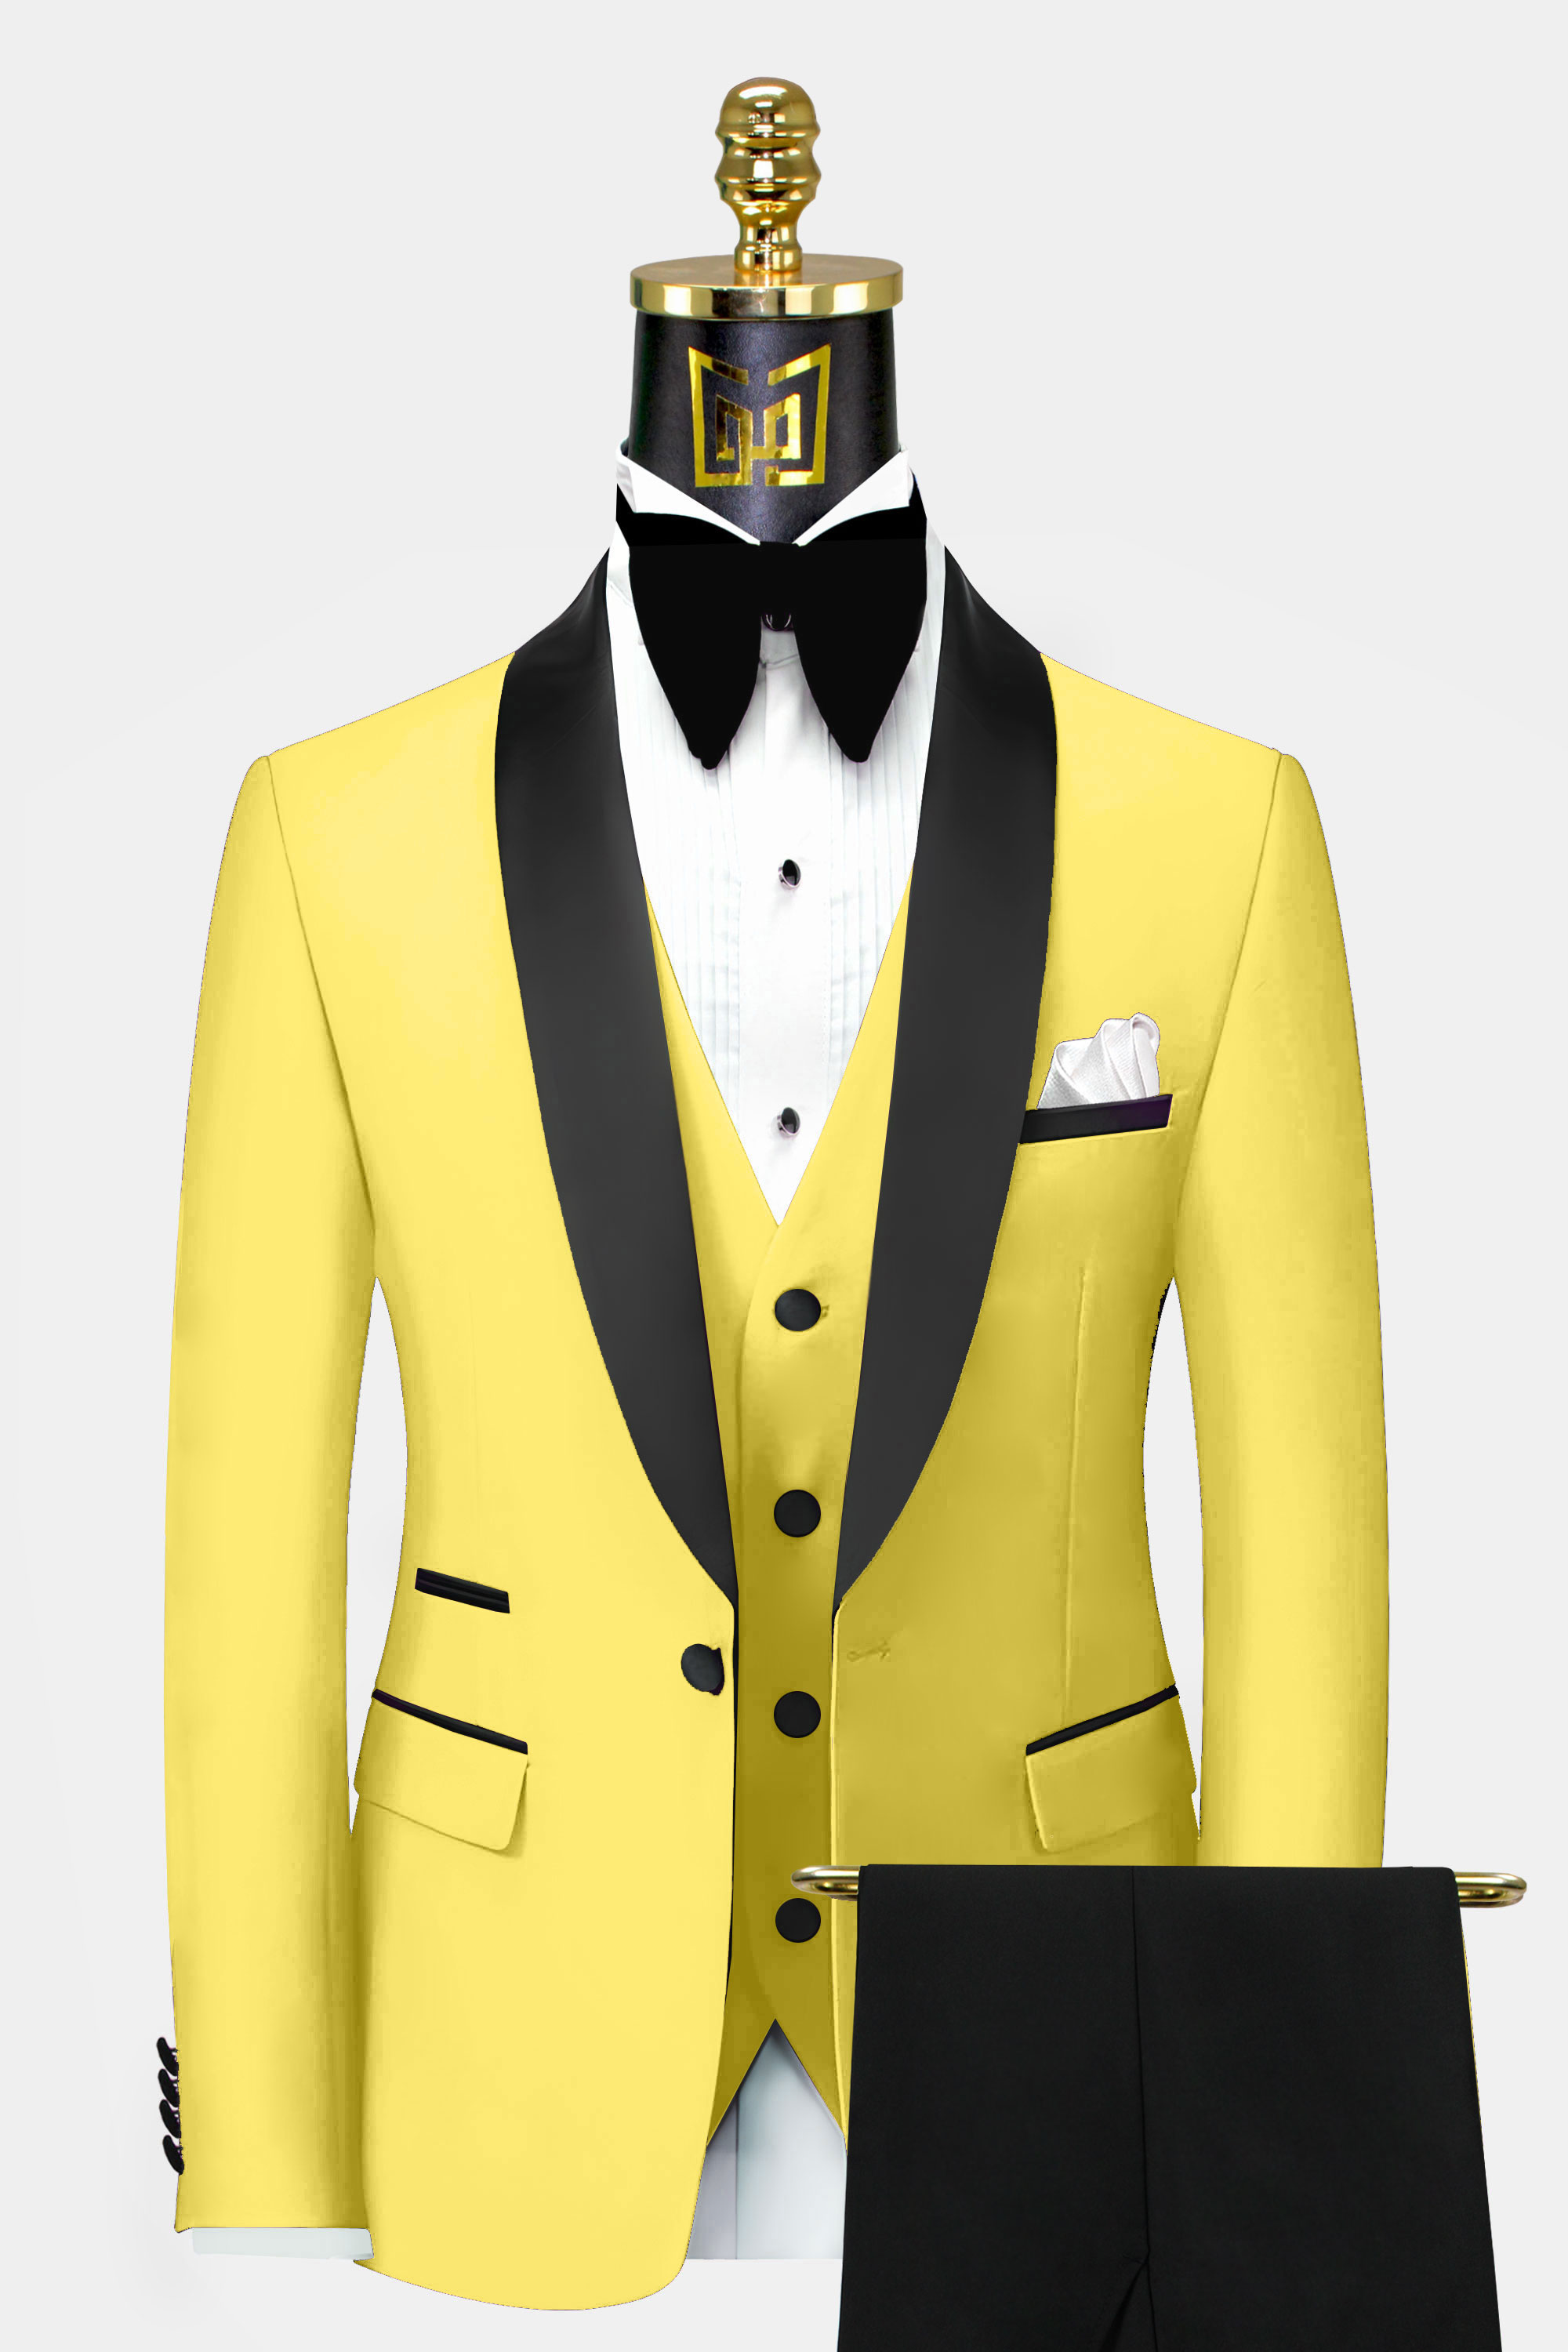 Mens-Black-and-Yellow-Tuxedo-Groom-Wedding-Prom-Suit-from-Gentlemansguru.com